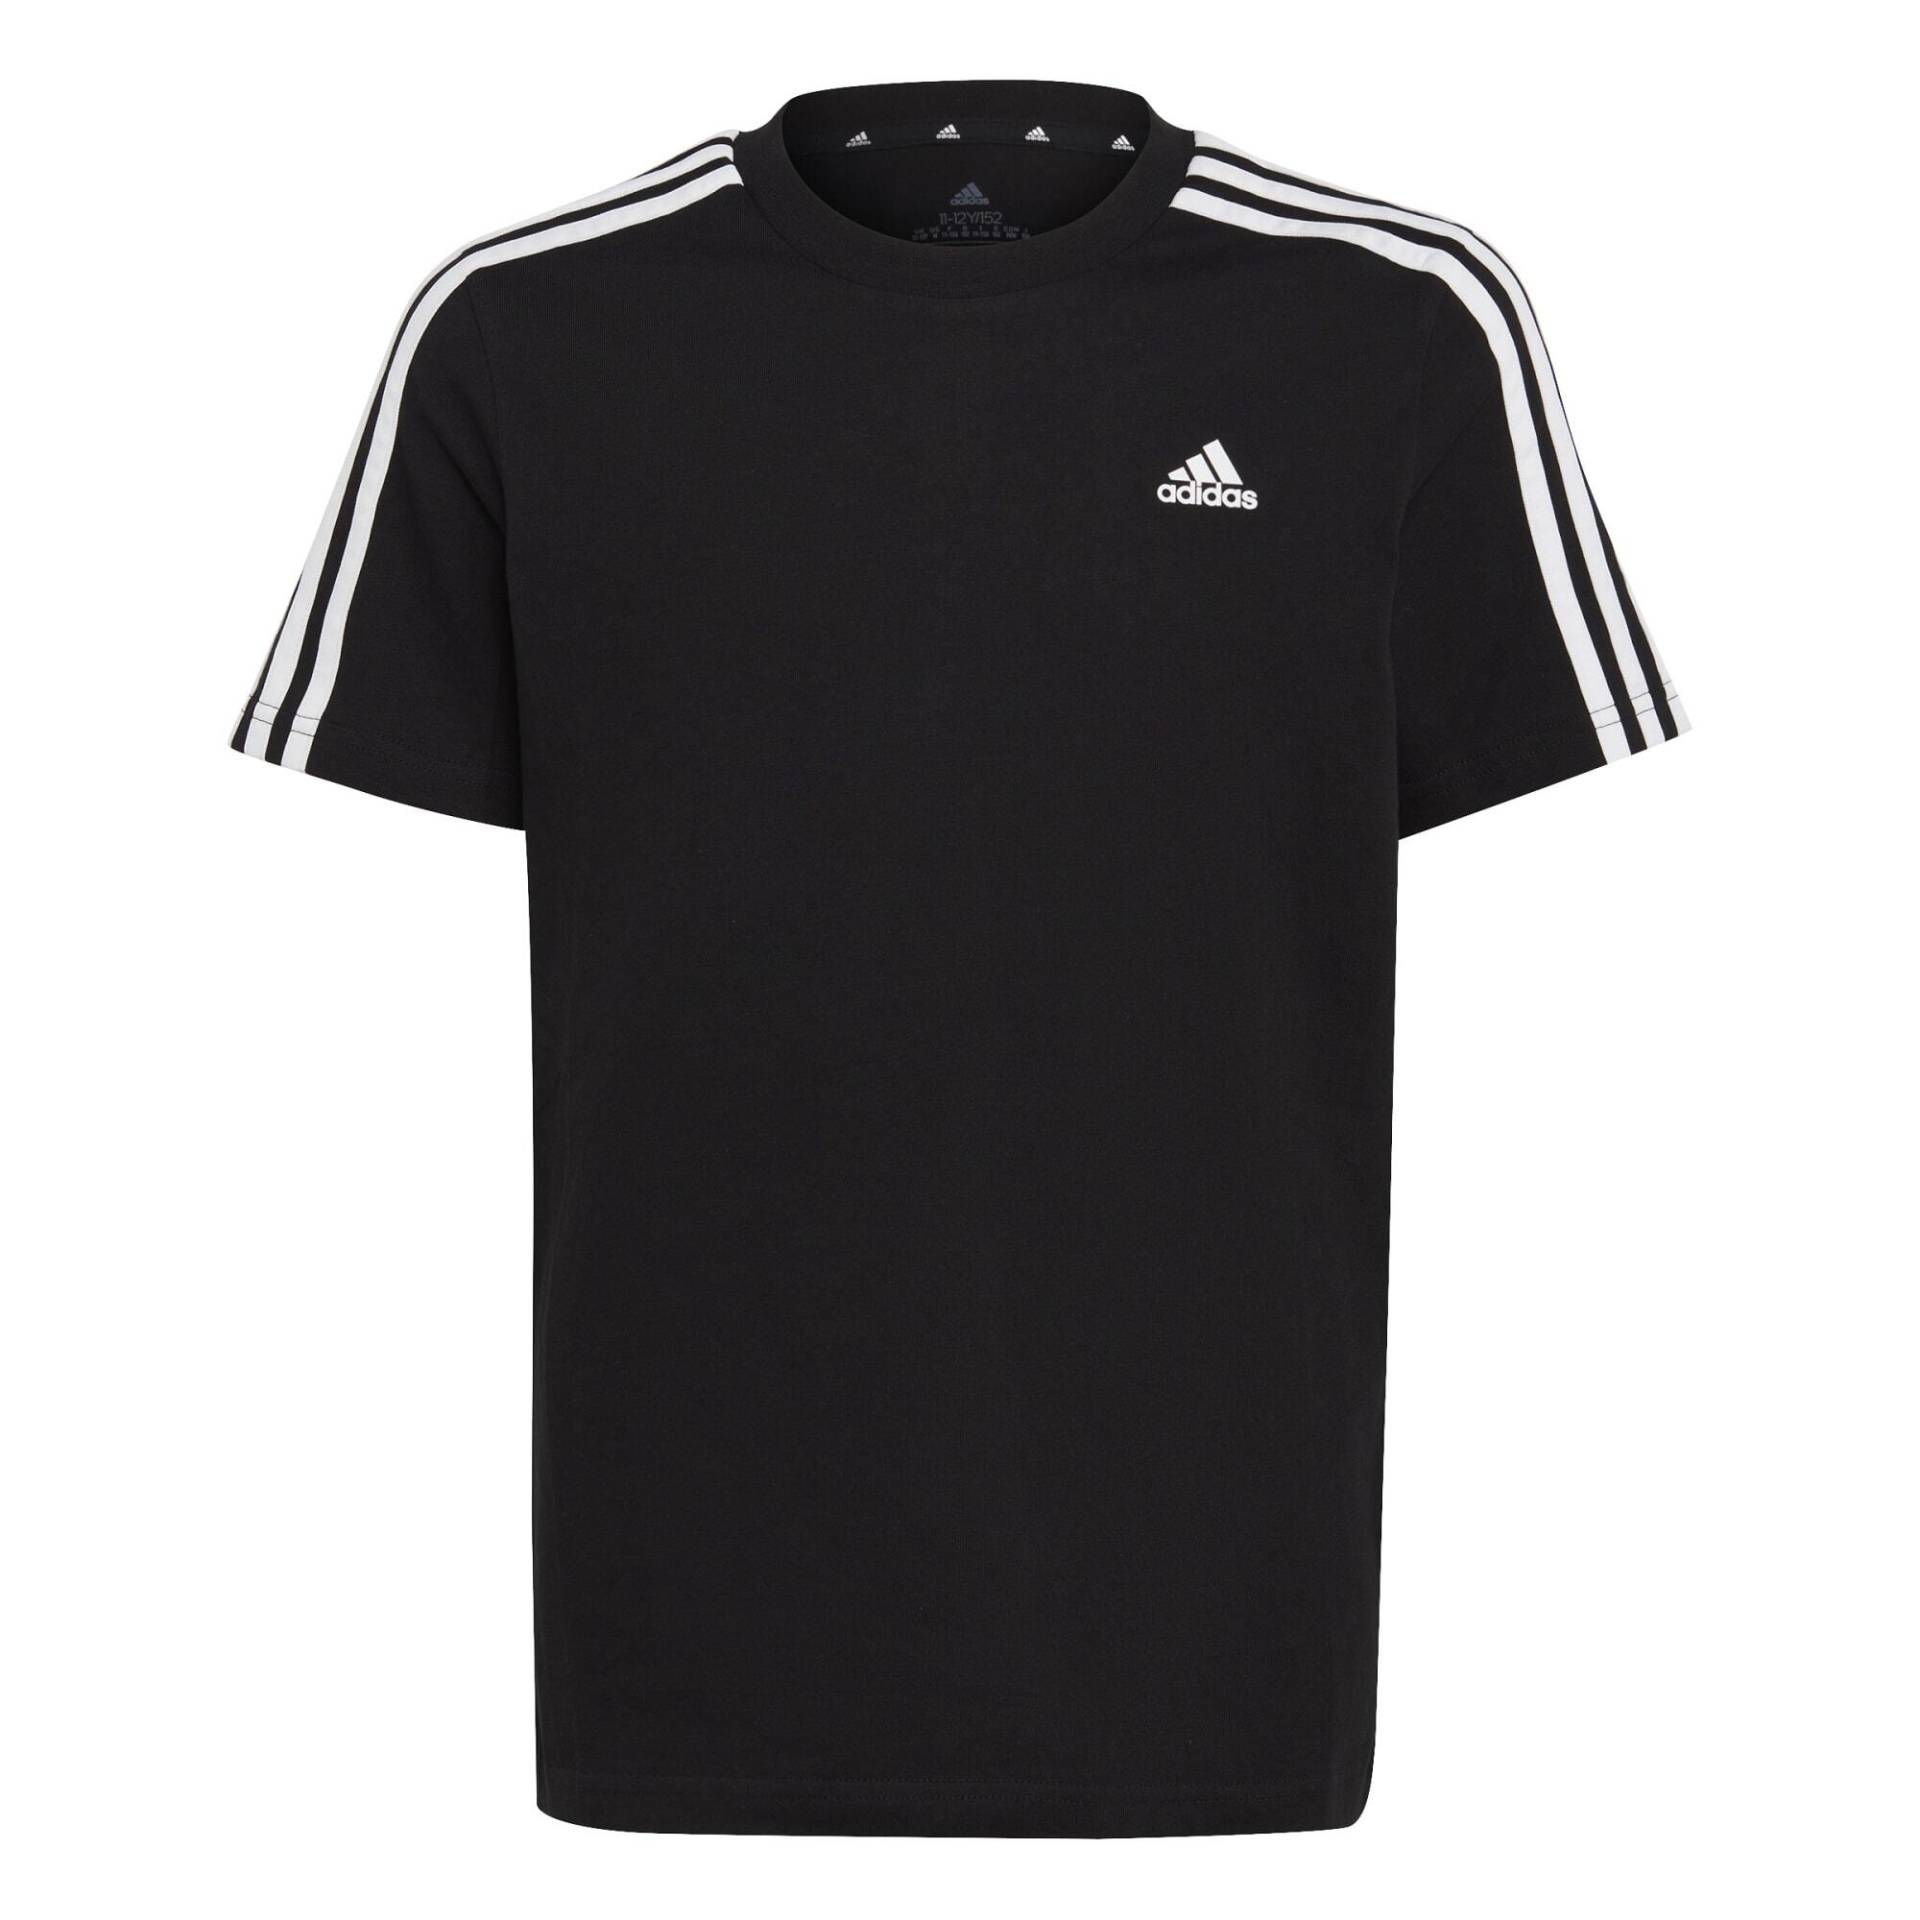 ADIDAS T-Shirt Kinder - schwarz von Adidas